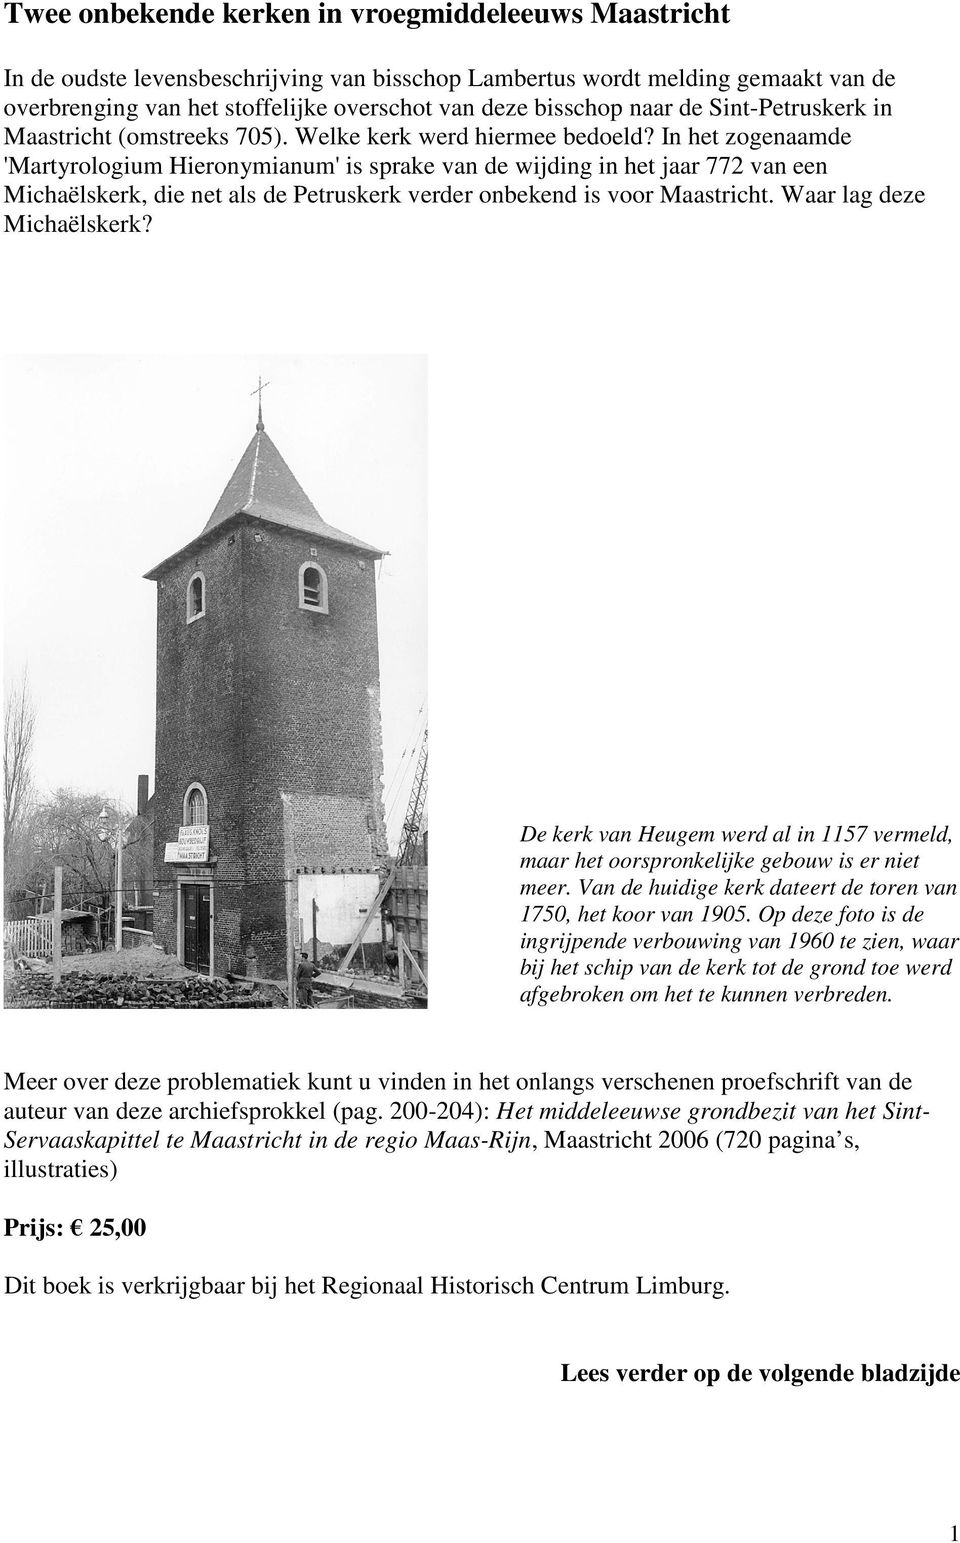 In het zogenaamde 'Martyrologium Hieronymianum' is sprake van de wijding in het jaar 772 van een Michaëlskerk, die net als de Petruskerk verder onbekend is voor Maastricht. Waar lag deze Michaëlskerk?